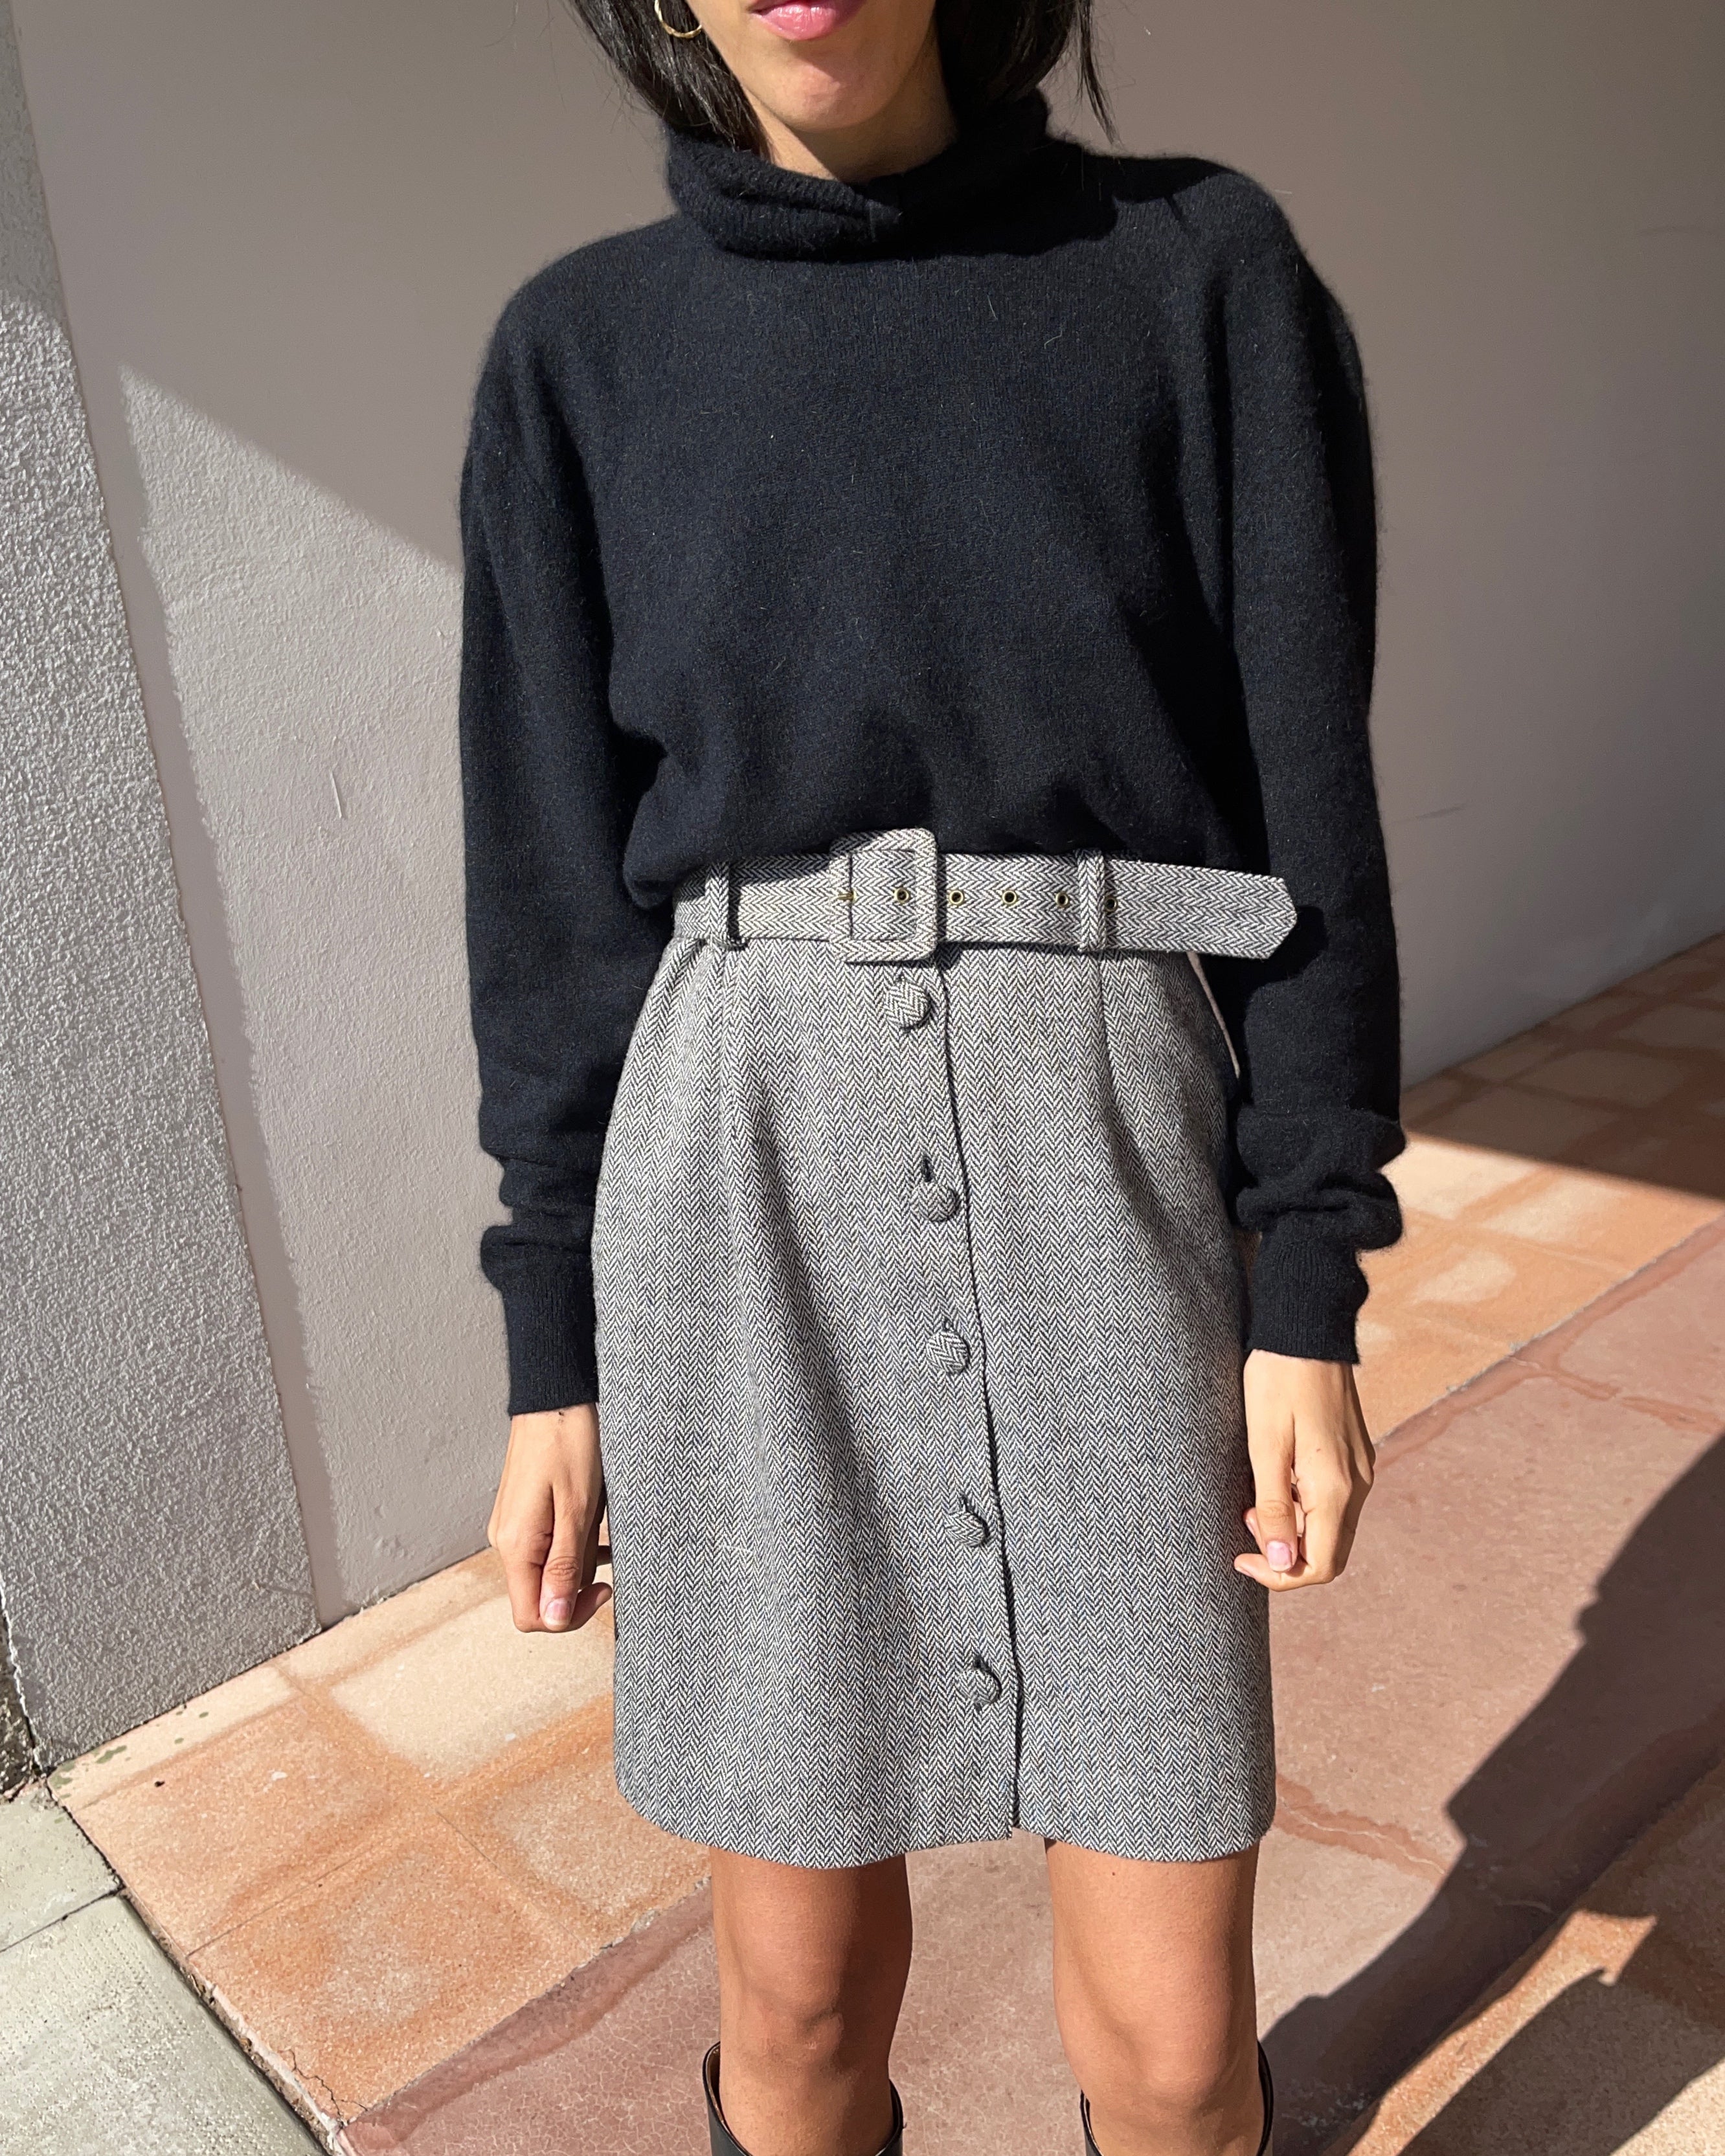 Wool blend skirt